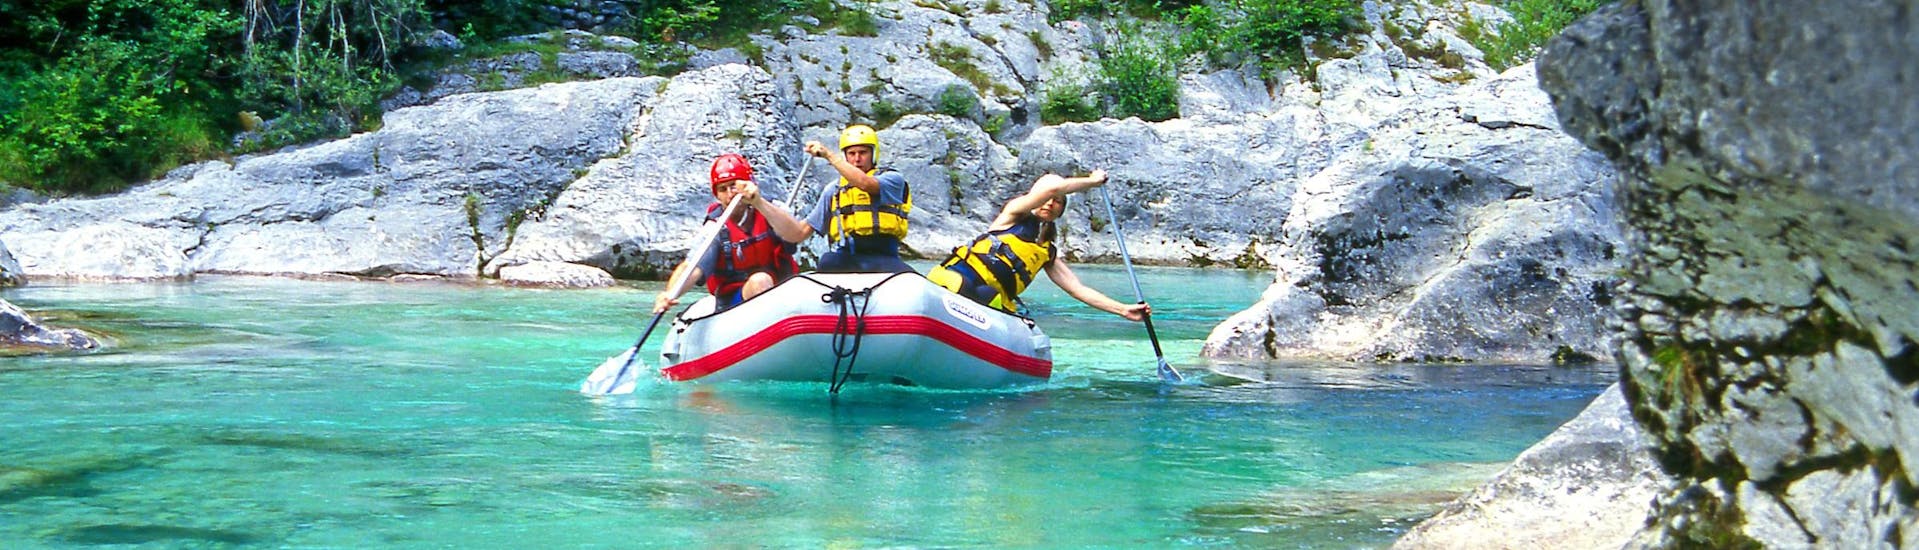 Emozioni forti vissute da un gruppo di giovani nel punto di interesse Sušec, ideale per fare rafting. 